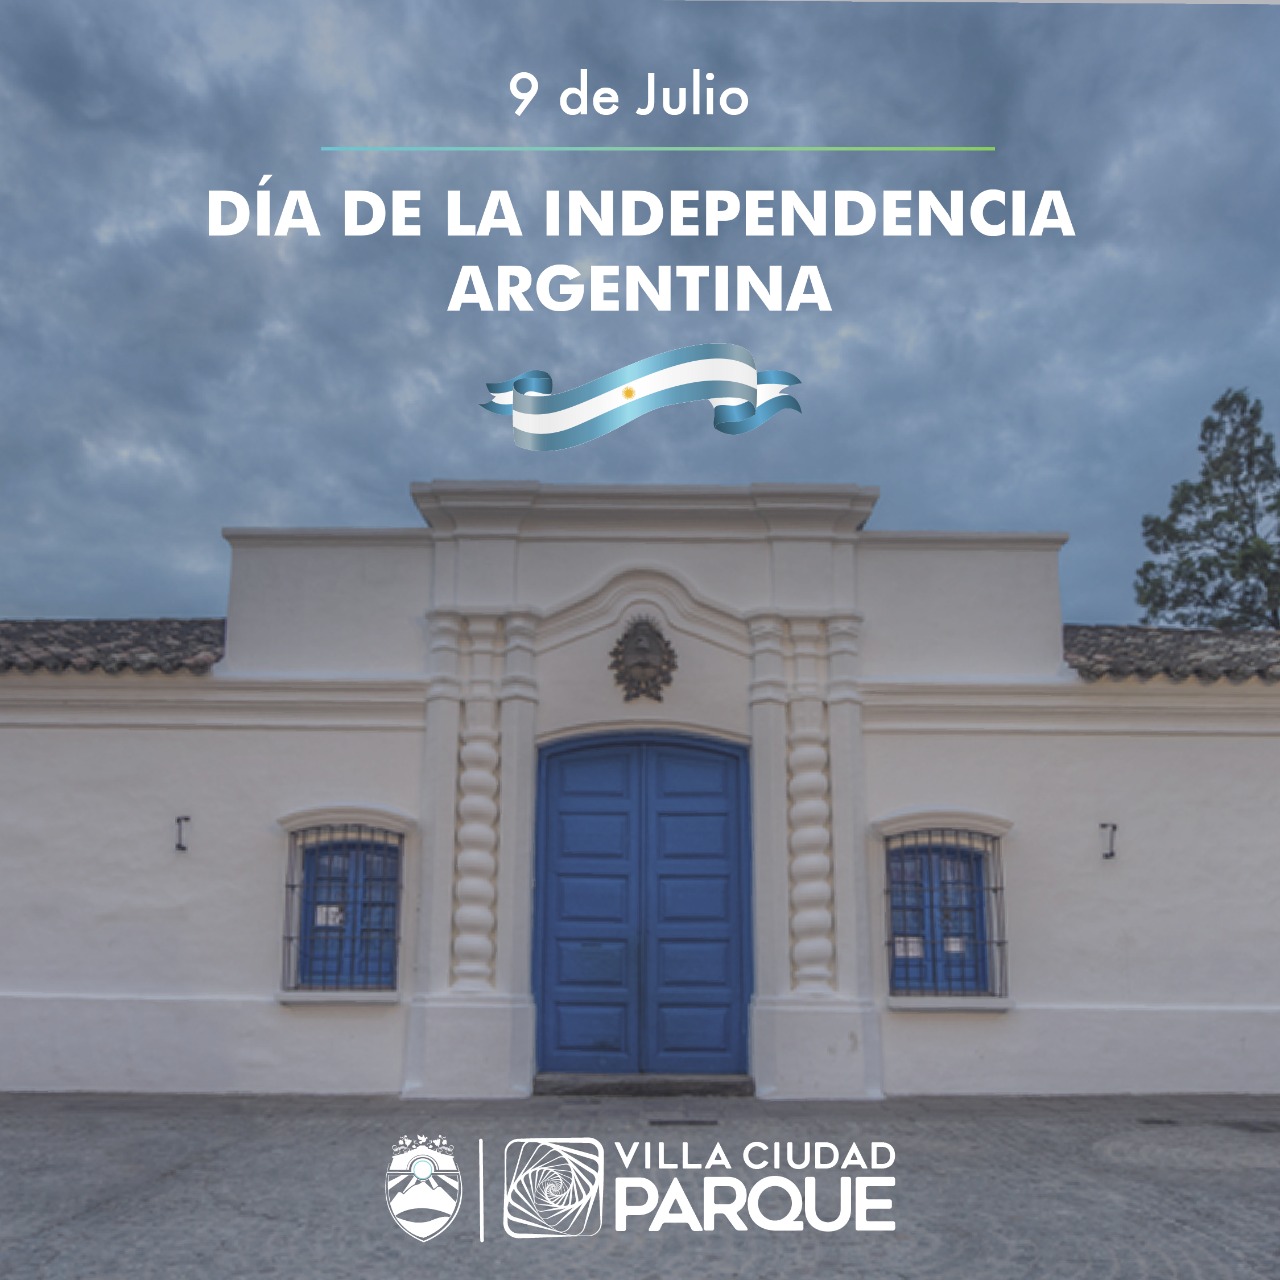 9 De Julio Dia De La Independencia Argentina Comuna Villa Ciudad Parque